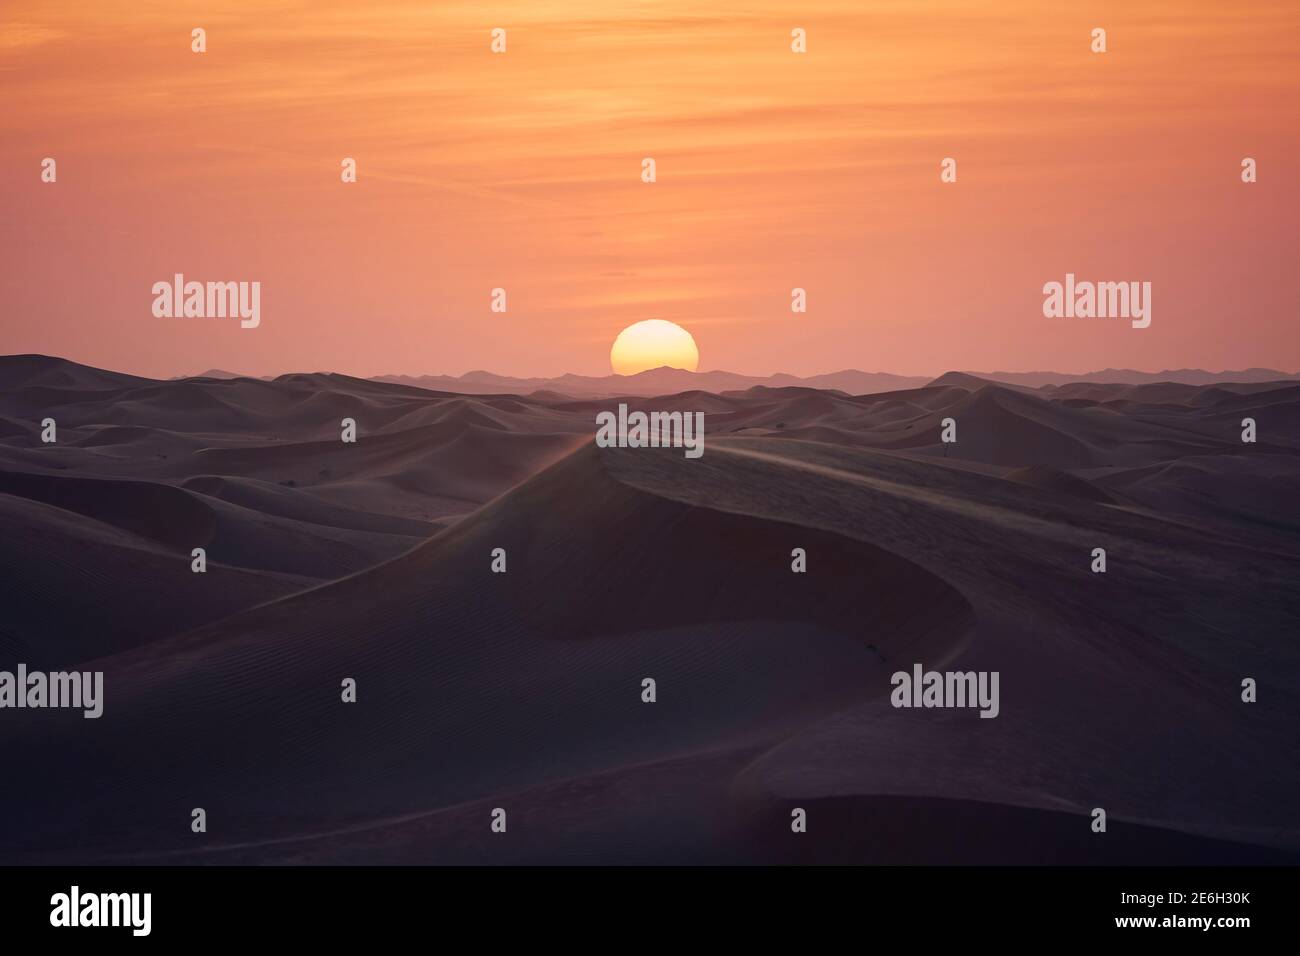 Sanddünen in Wüstenlandschaft bei schönem Sonnenuntergang. Abu Dhabi, Vereinigte Arabische Emirate Stockfoto